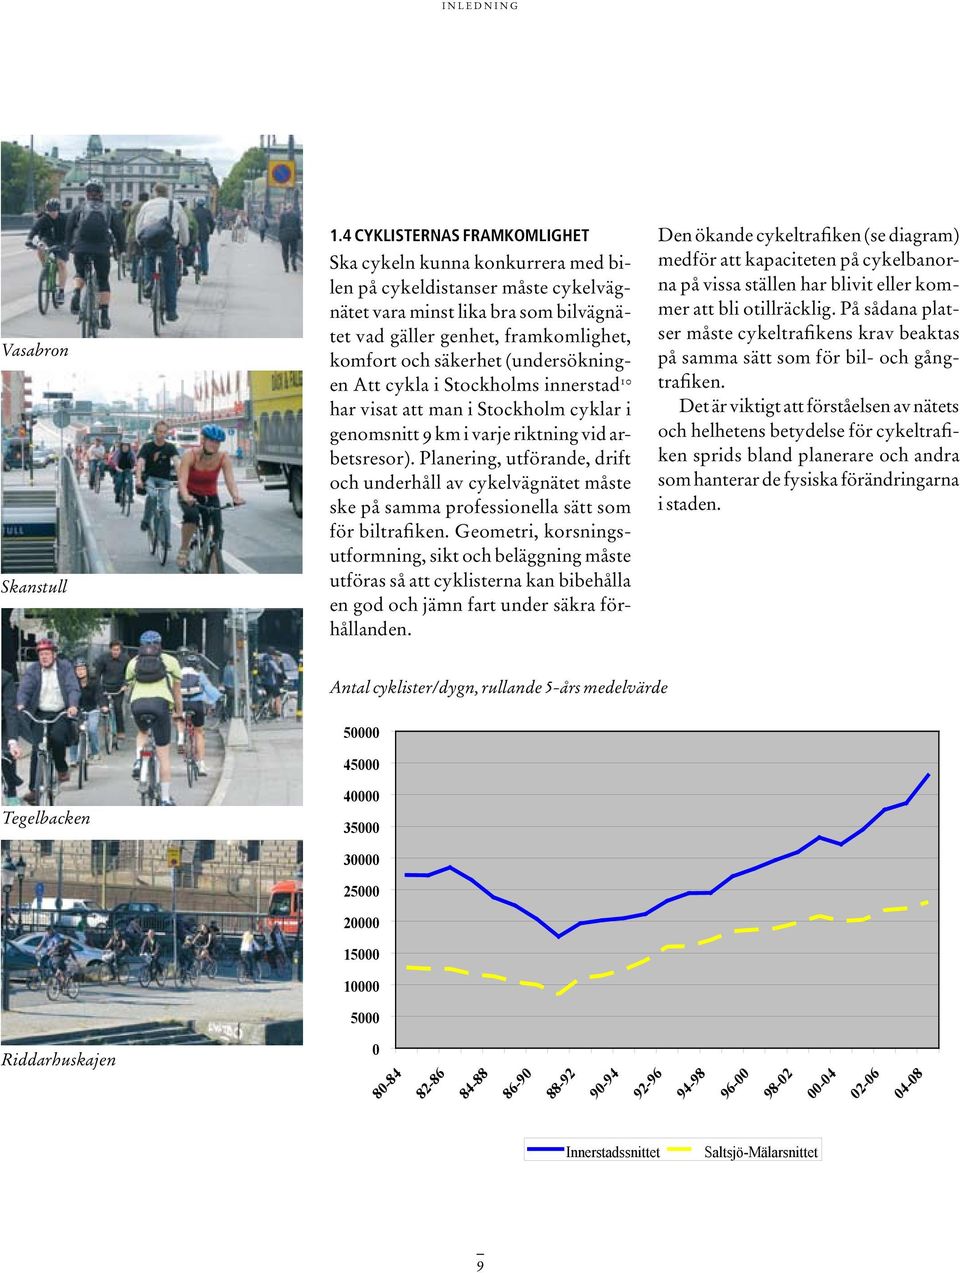 (undersökningen Att cykla i Stockholms innerstad 10 har visat att man i Stockholm cyklar i genomsnitt 9 km i varje riktning vid arbetsresor).